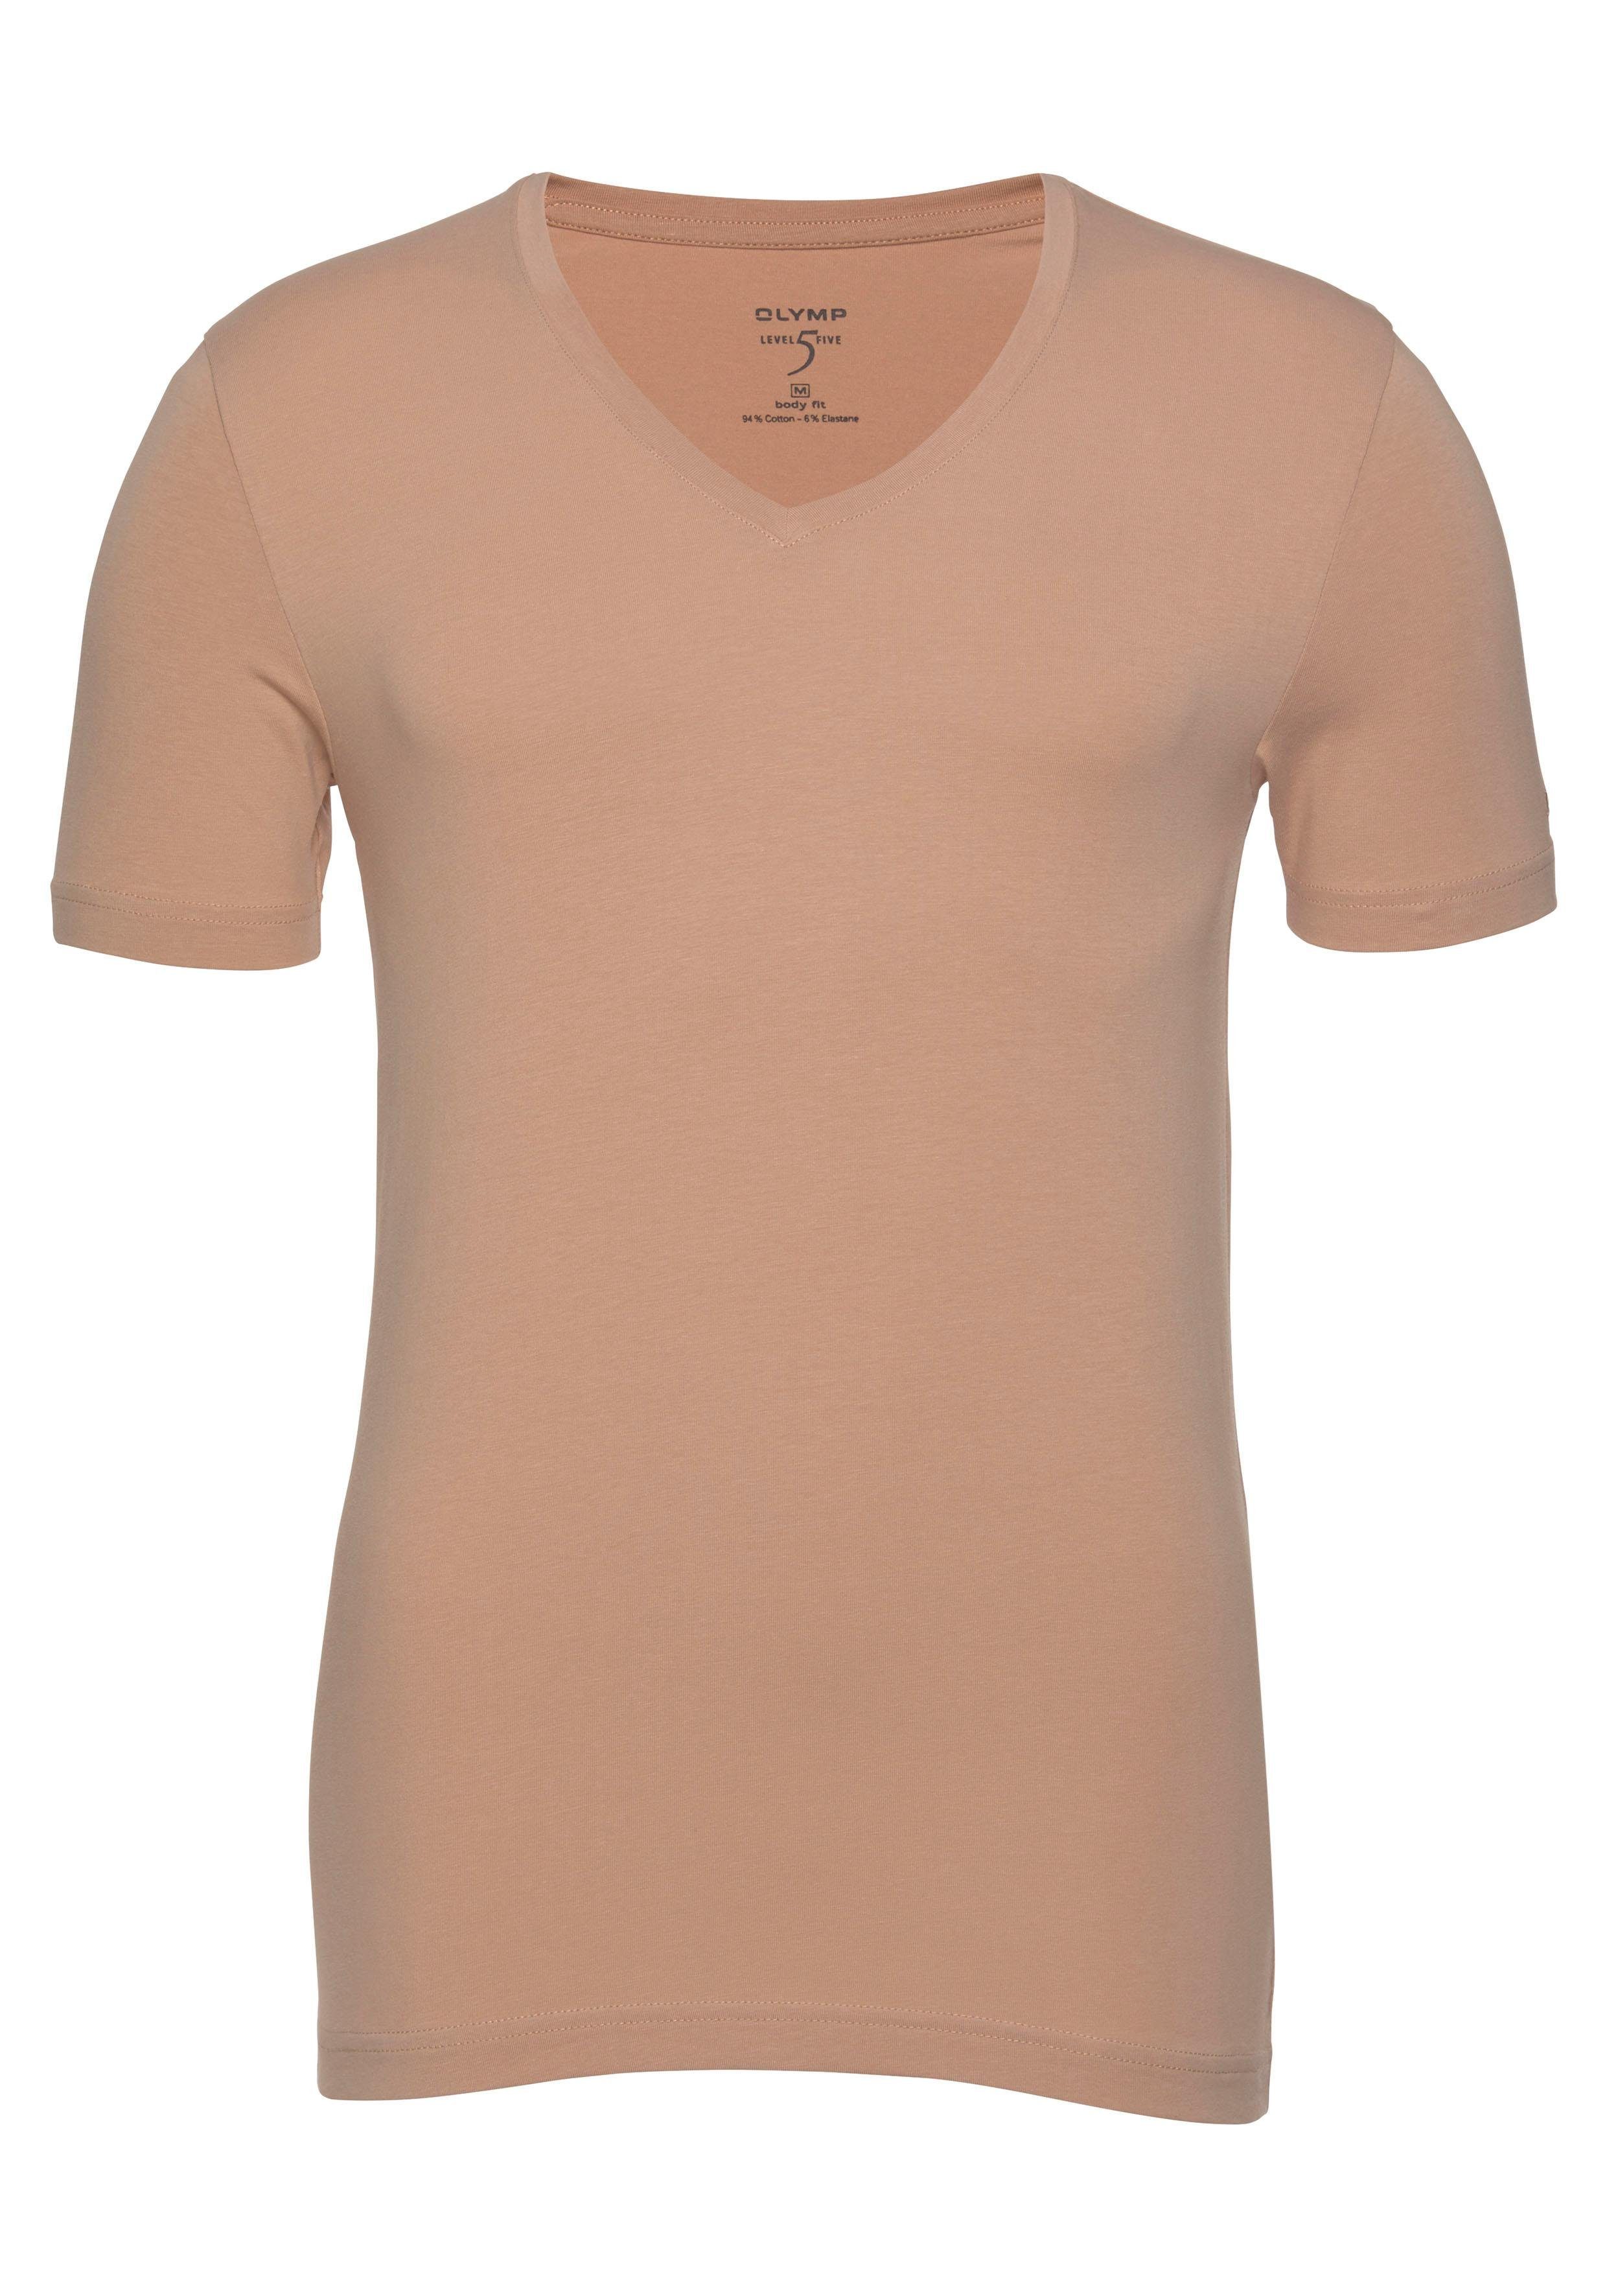 OLYMP T-Shirt »Level Five body fit« V-Ausschnitt, Ideal zum Unterziehen  online kaufen | OTTO